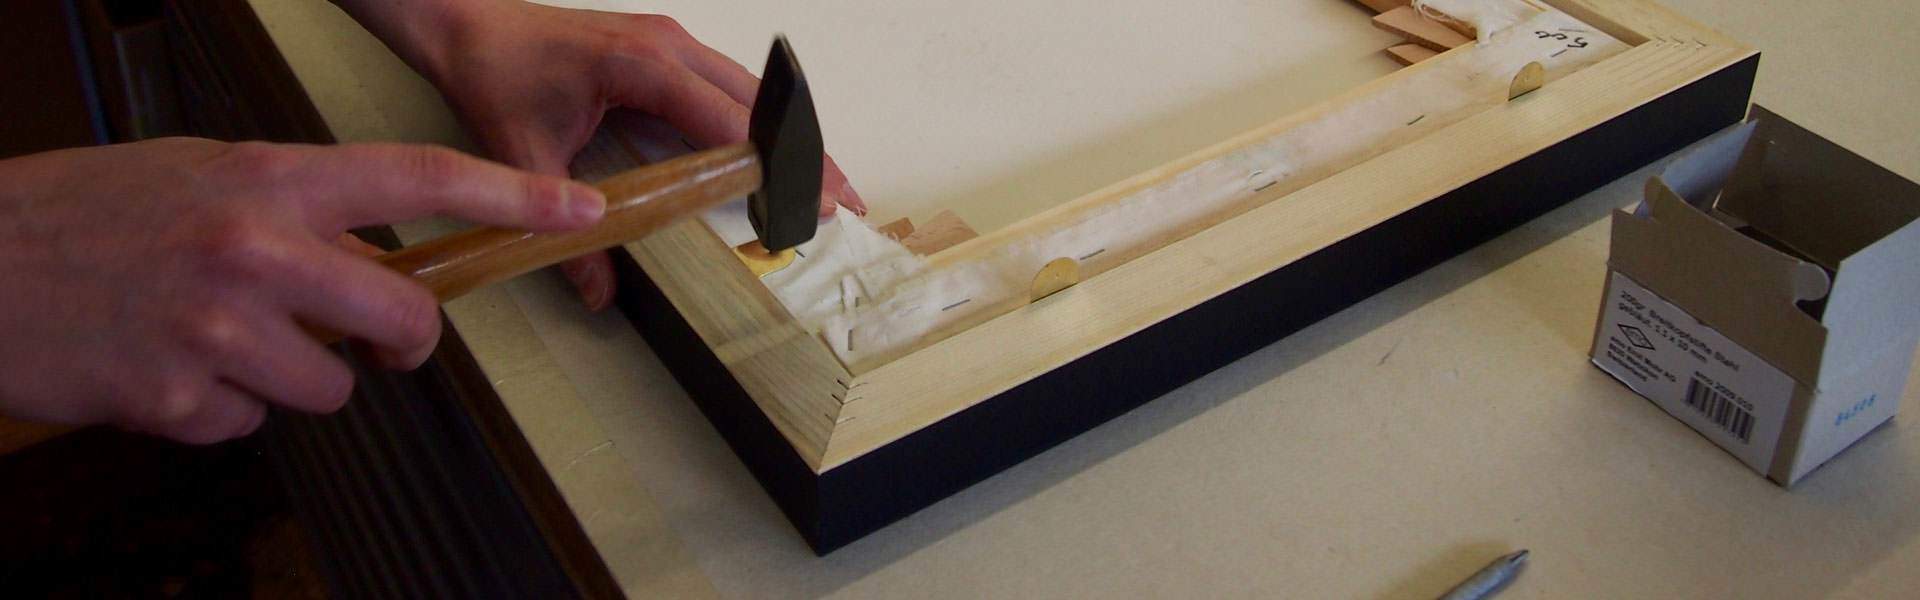 Keilrahmenbild wird in Rahmen montiert - Einrahmungen Papierhandwerk